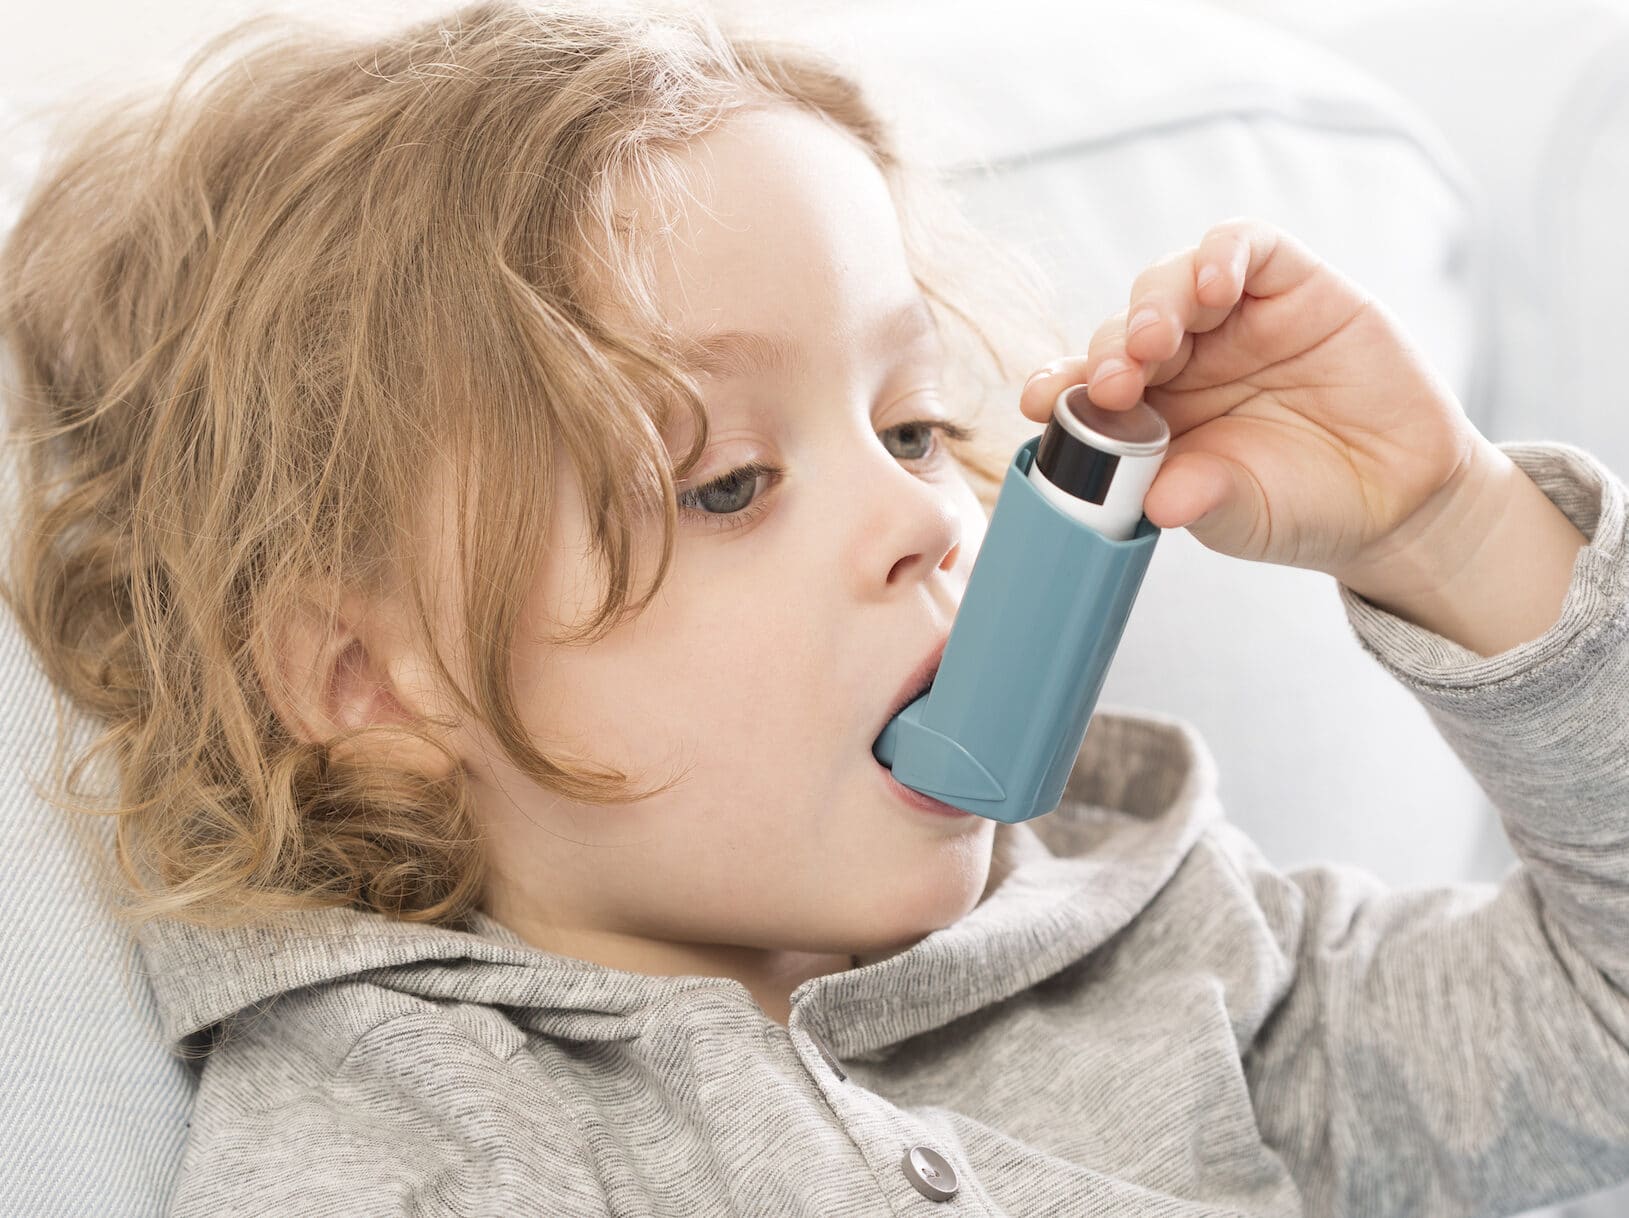 Small child using an inhaler